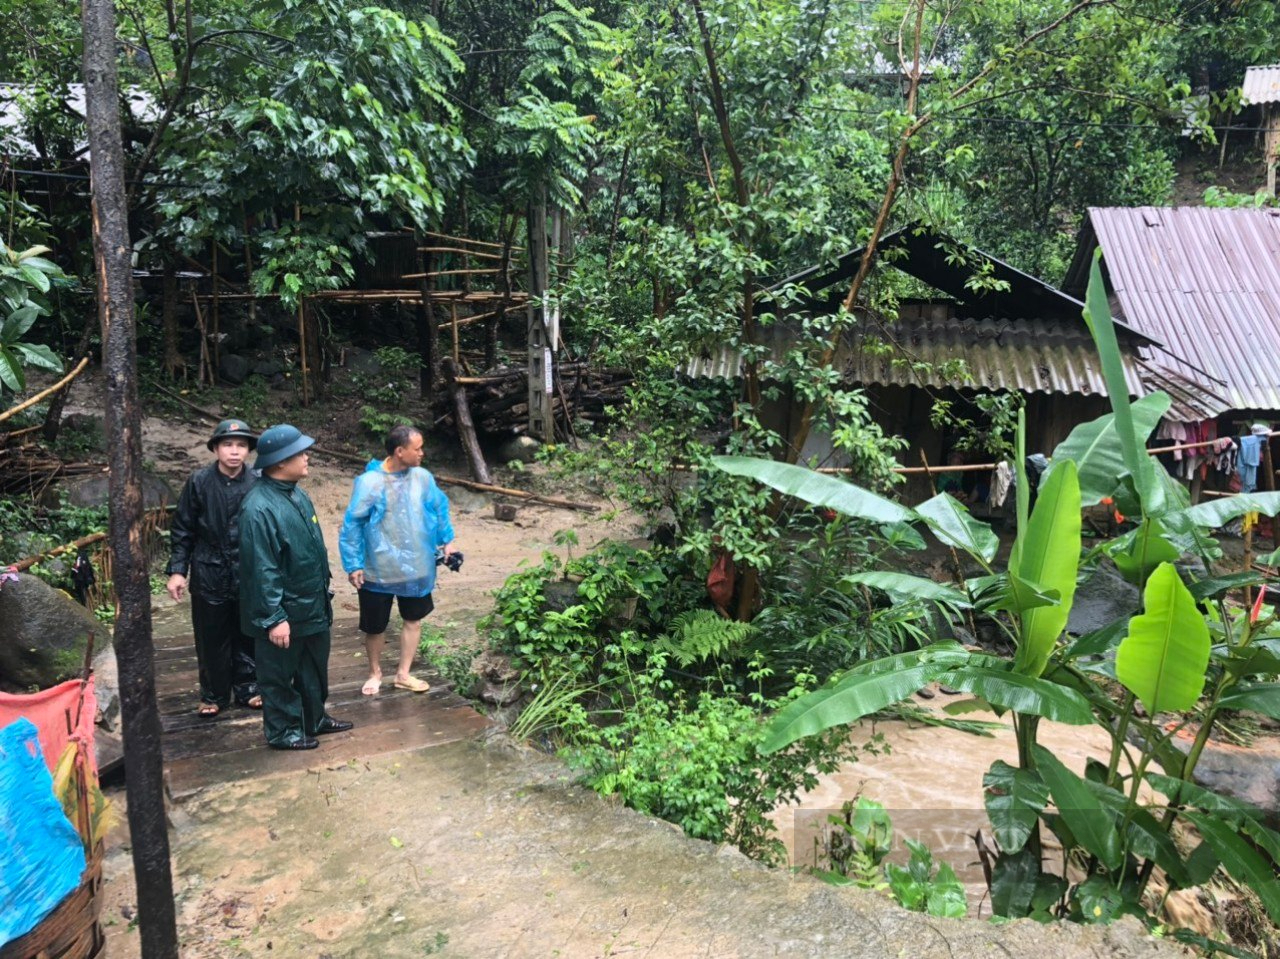 Thanh Hoá: Huyện Mường Lát sơ tán người dân vì mưa lớn gây sạt lở đất ở nhiều nơi - Ảnh 4.